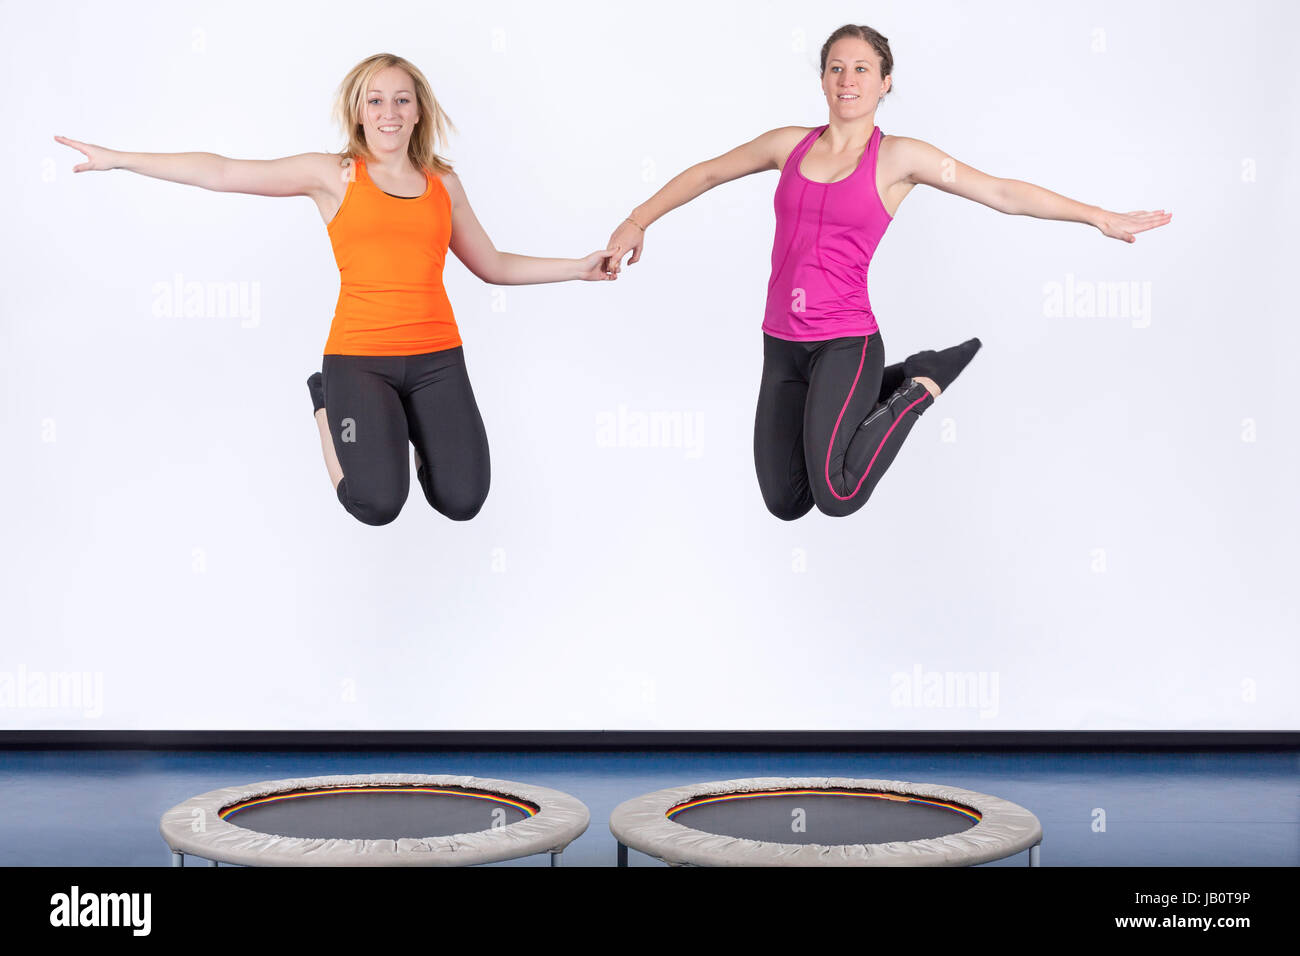 zwei Sportlerinnen springen auf Minitrampolin Stock Photo